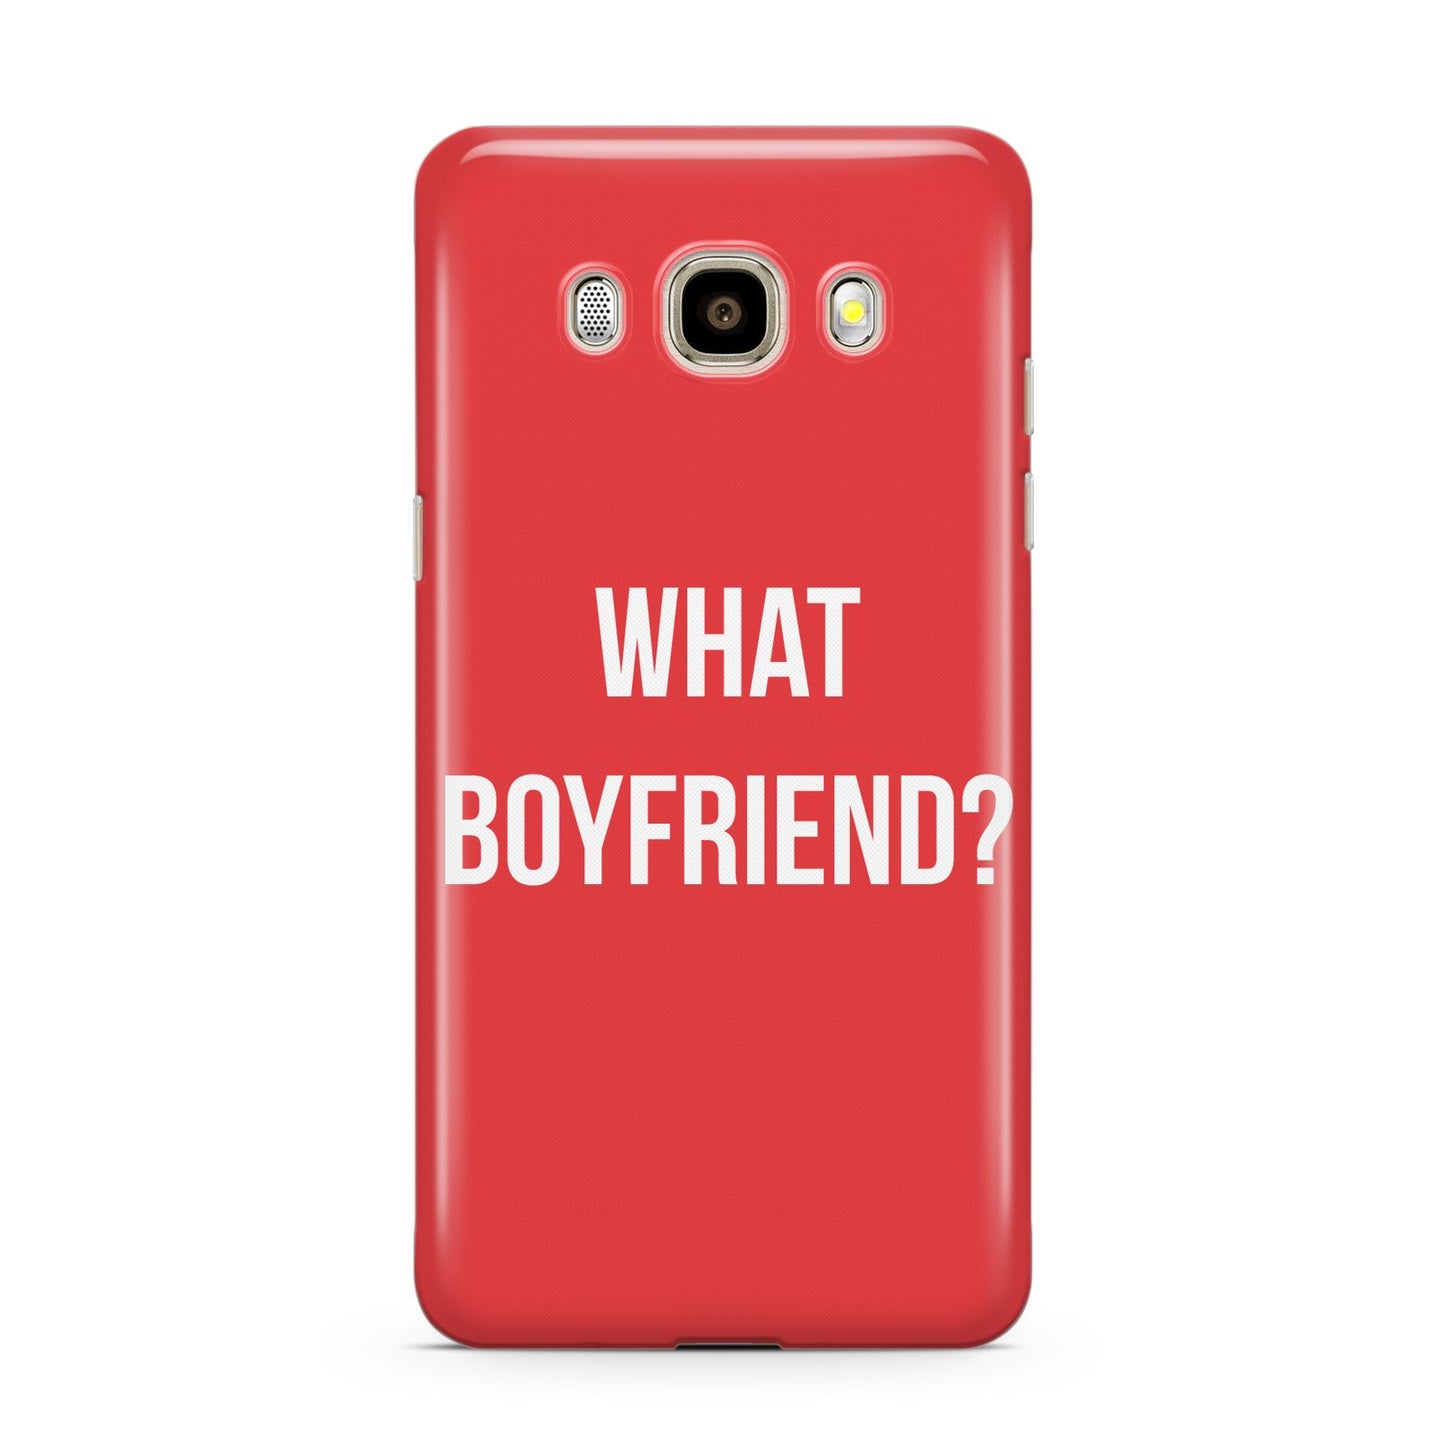 What Boyfriend Samsung Galaxy J7 2016 Case on gold phone